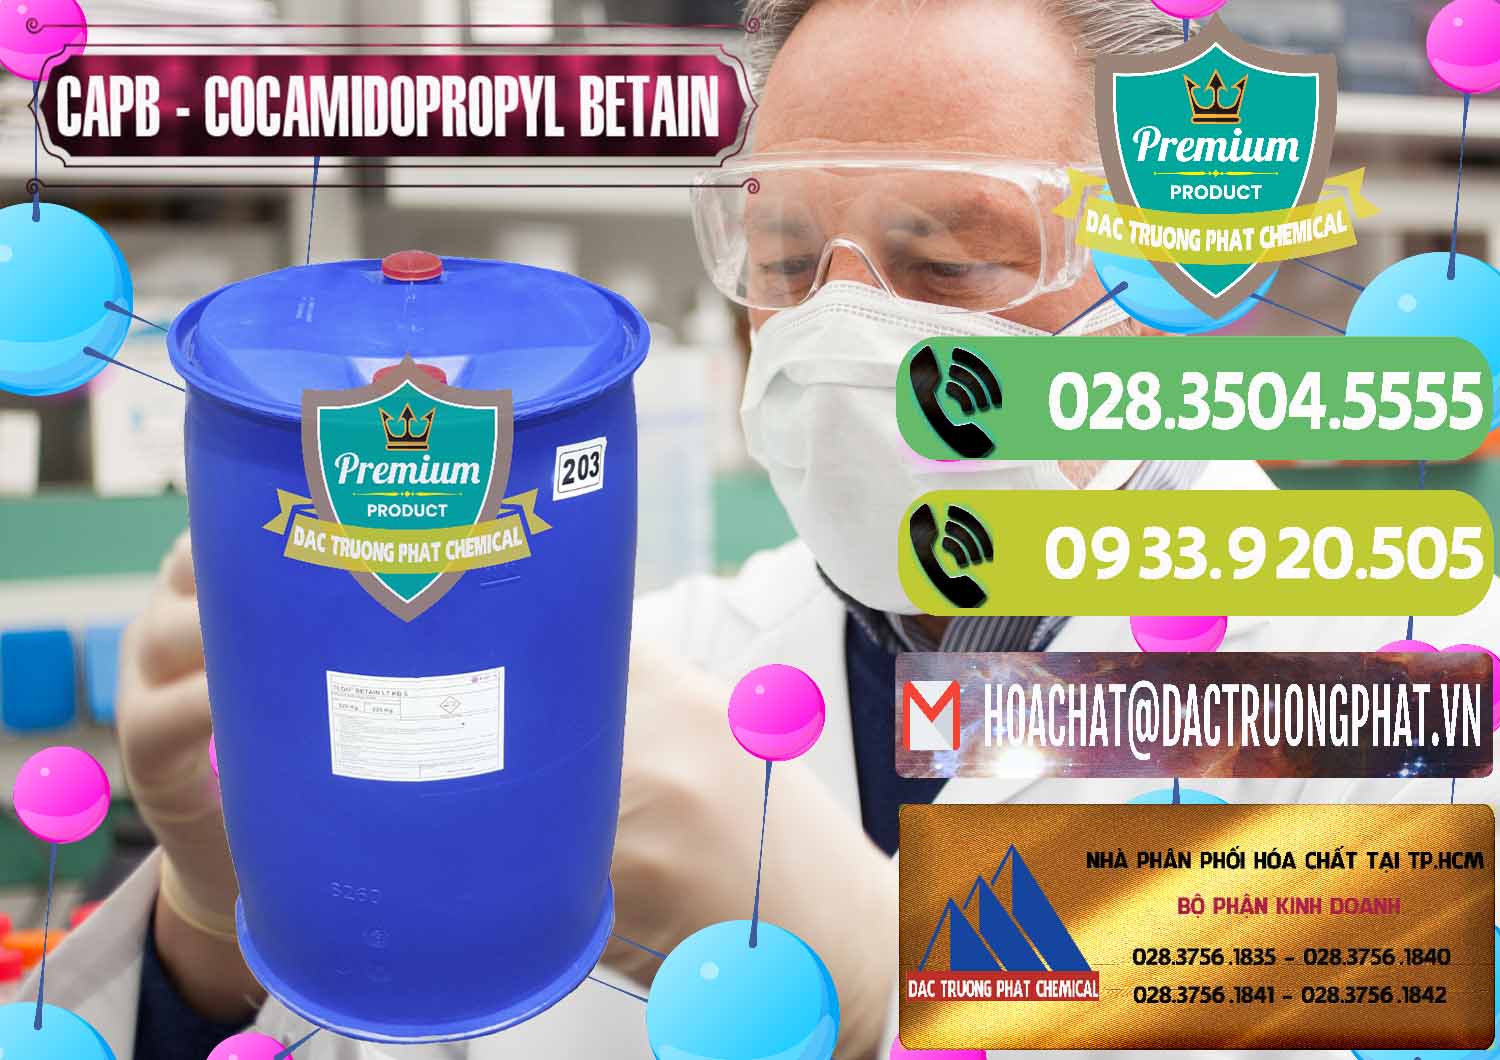 Công ty bán - cung cấp Cocamidopropyl Betaine - CAPB Tego Indonesia - 0327 - Nhà cung cấp ( phân phối ) hóa chất tại TP.HCM - hoachatmientay.vn